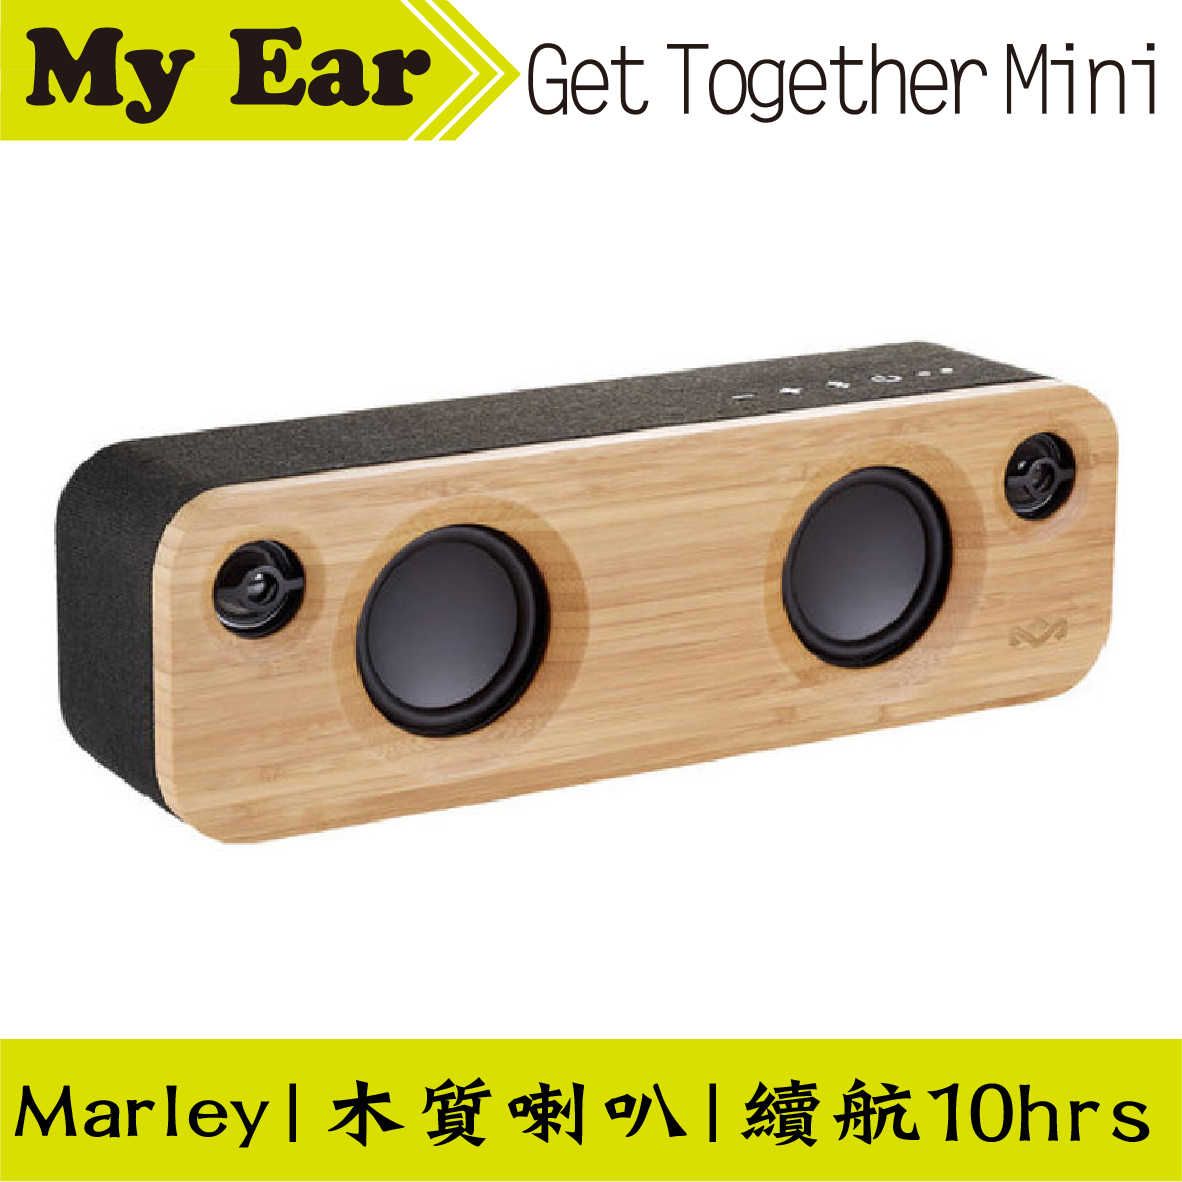 Marley Get Together Mini 黑色 藍芽 木質喇叭 | My Ear耳機專門店